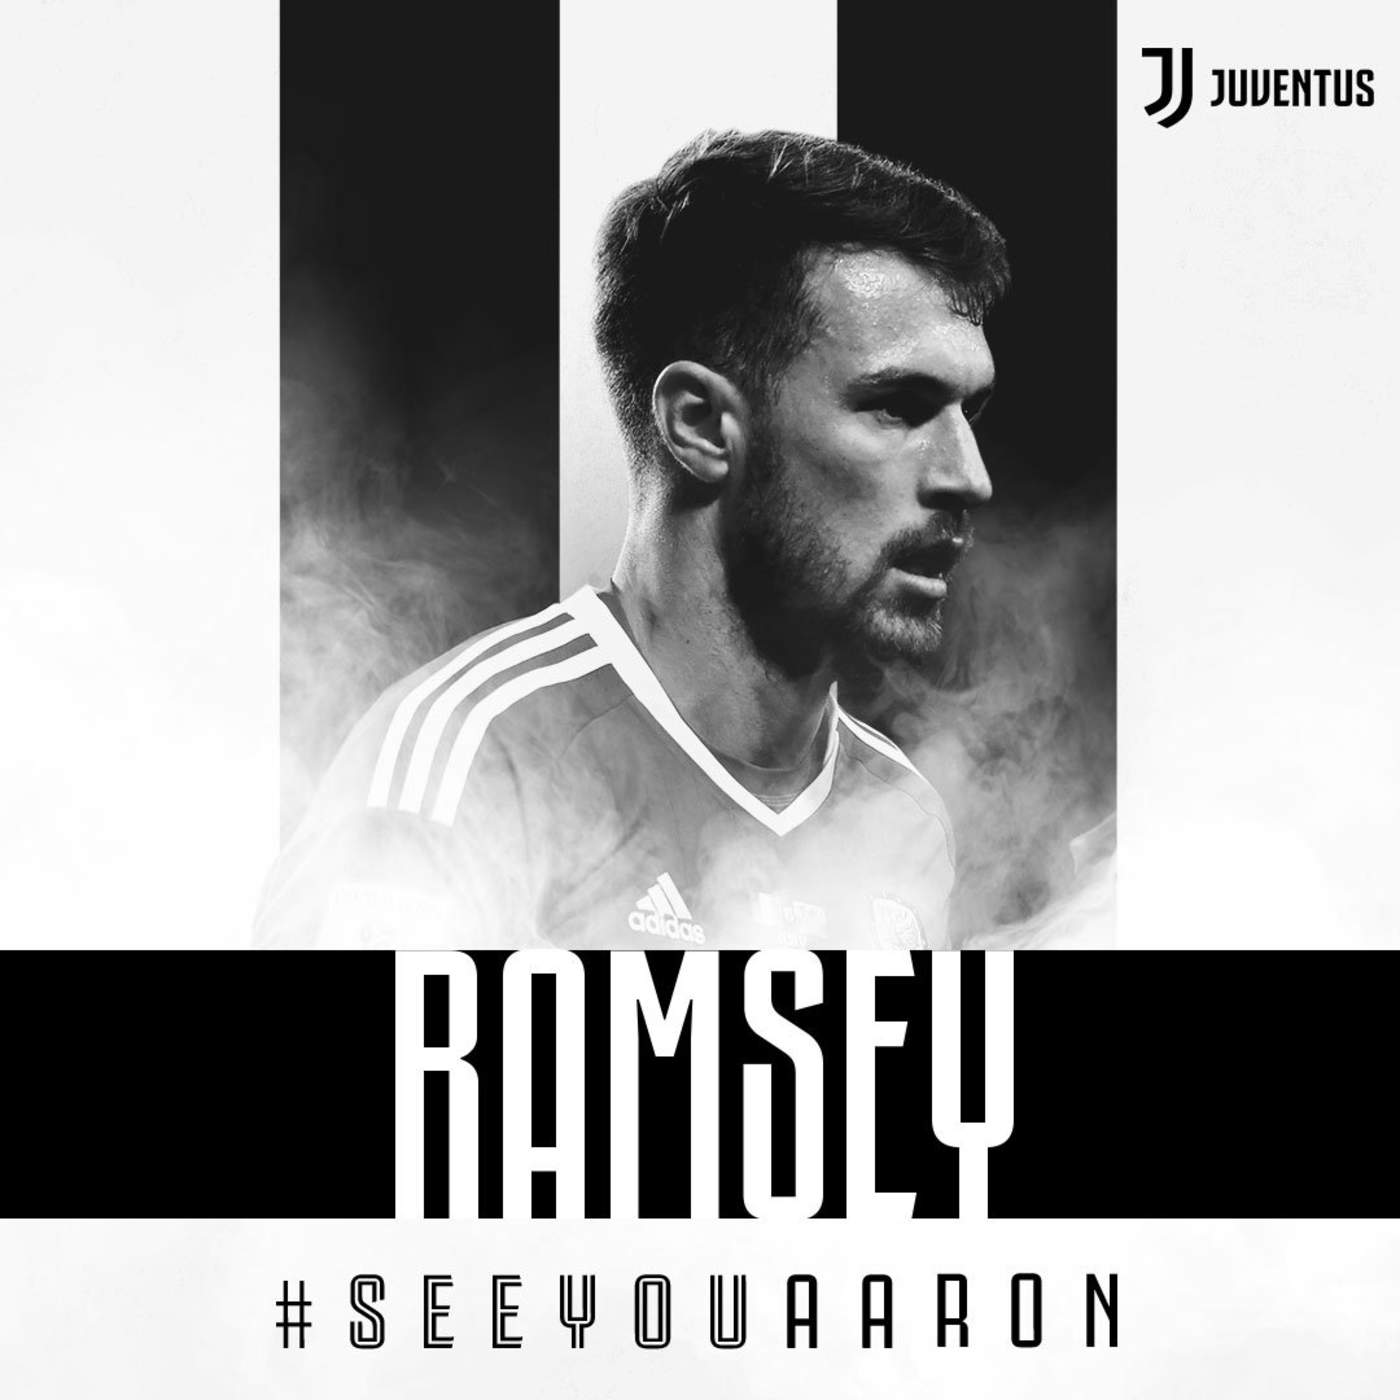 Juventus confirma la adquisición de Ramsey